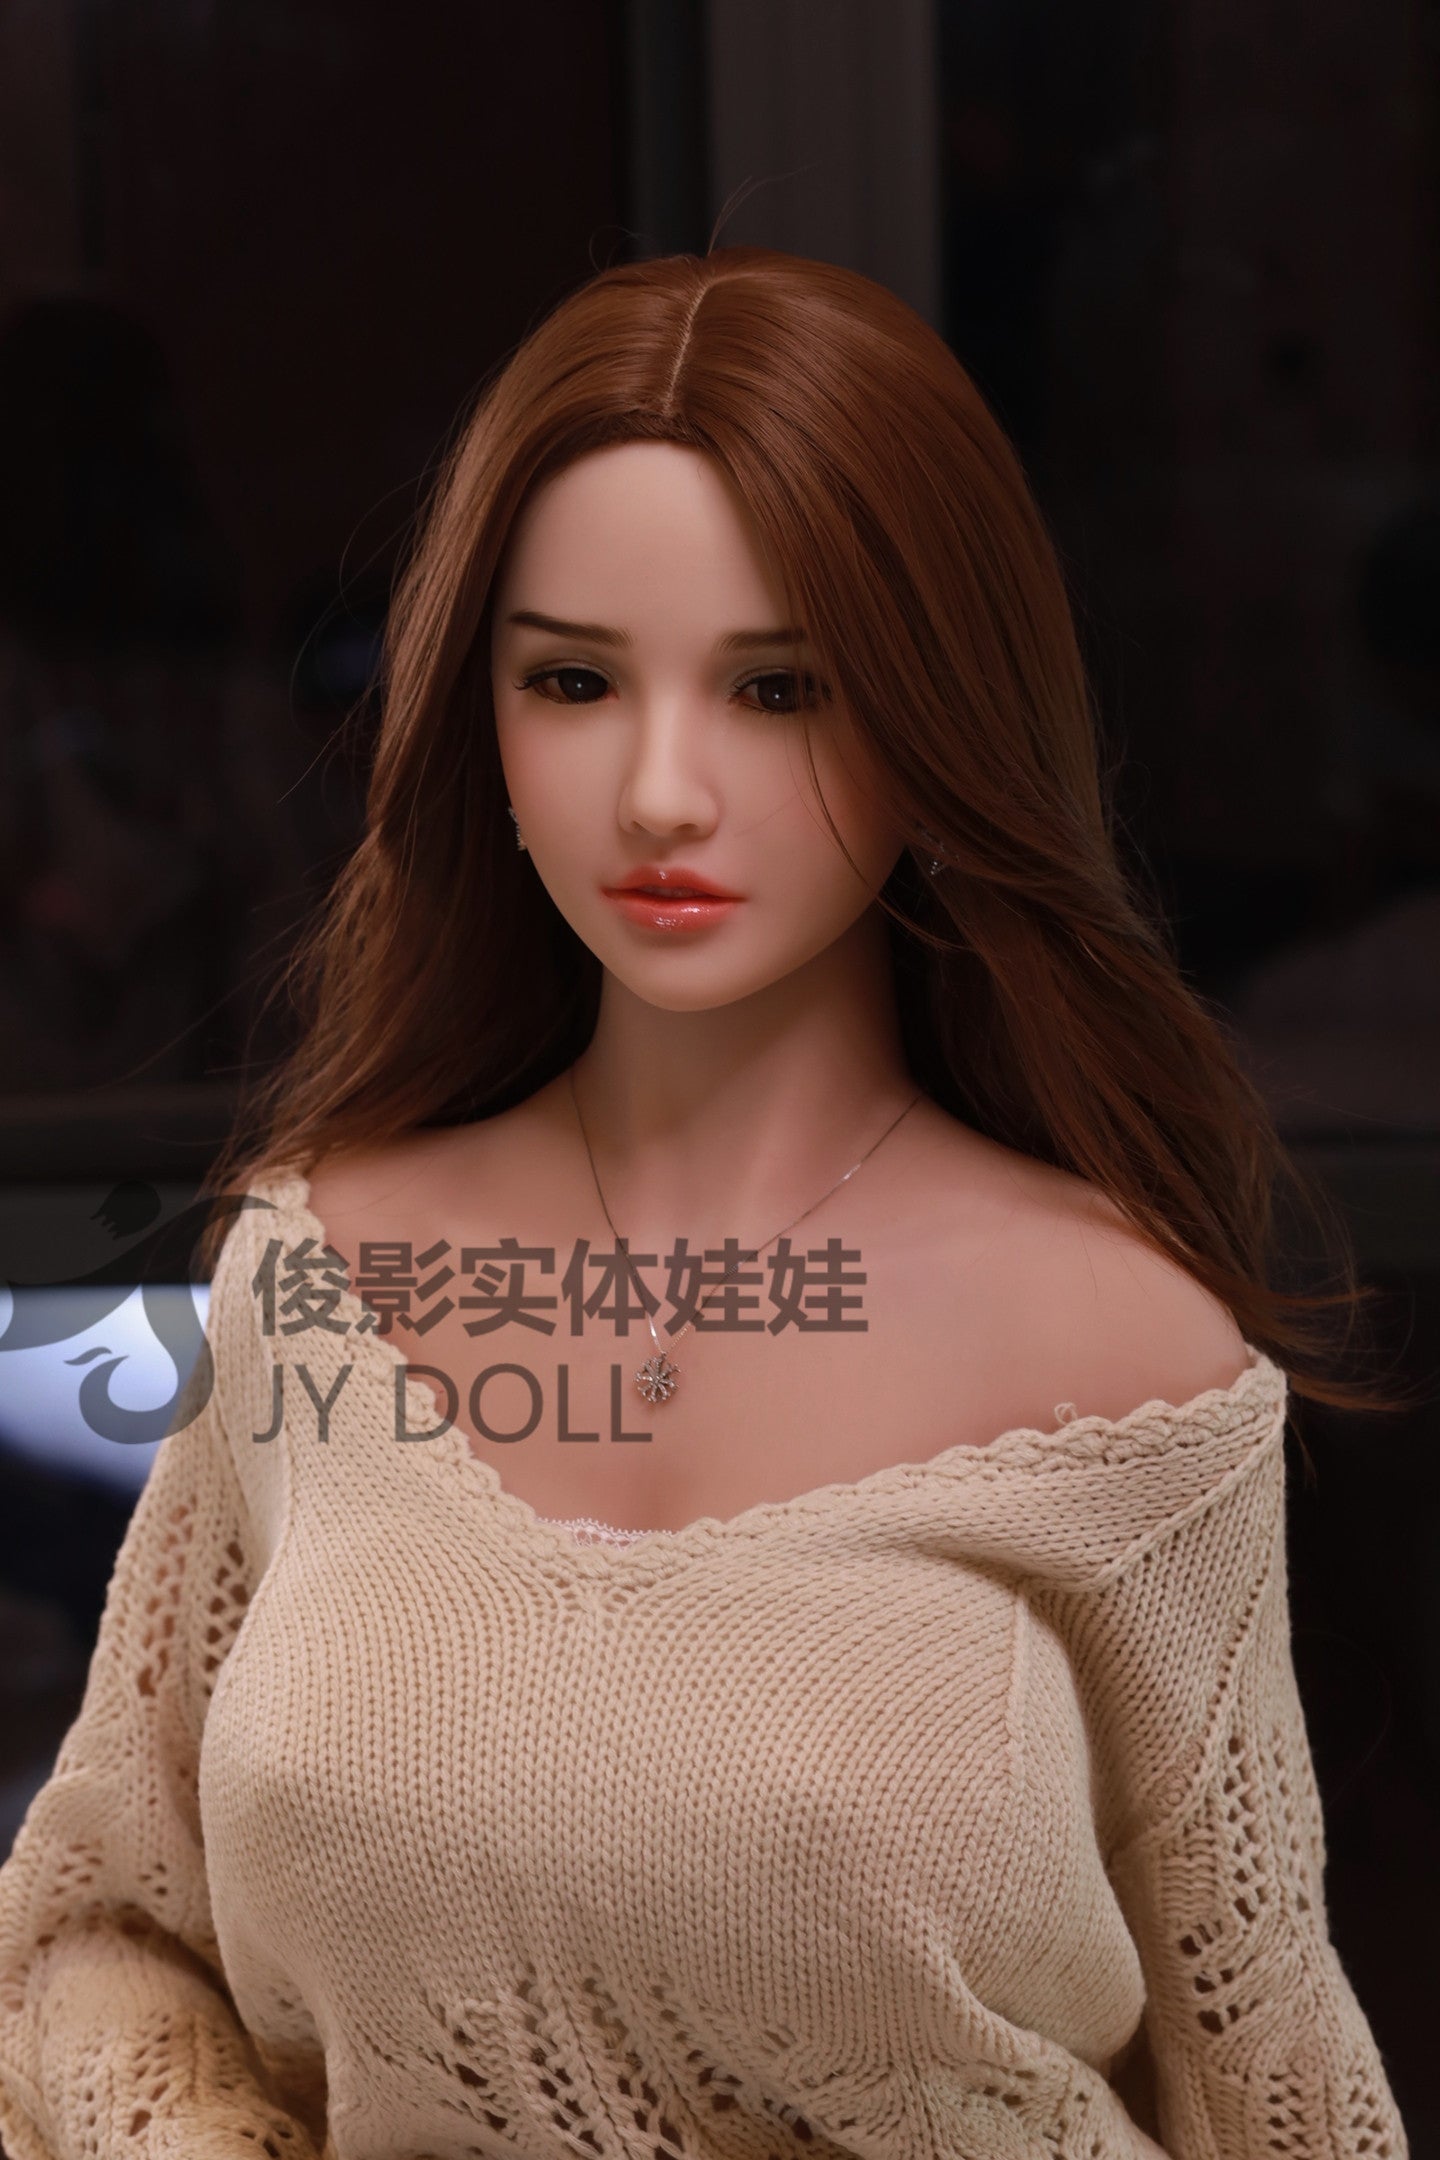 JY Doll 157 cm TPE - Amy | Sex Dolls SG